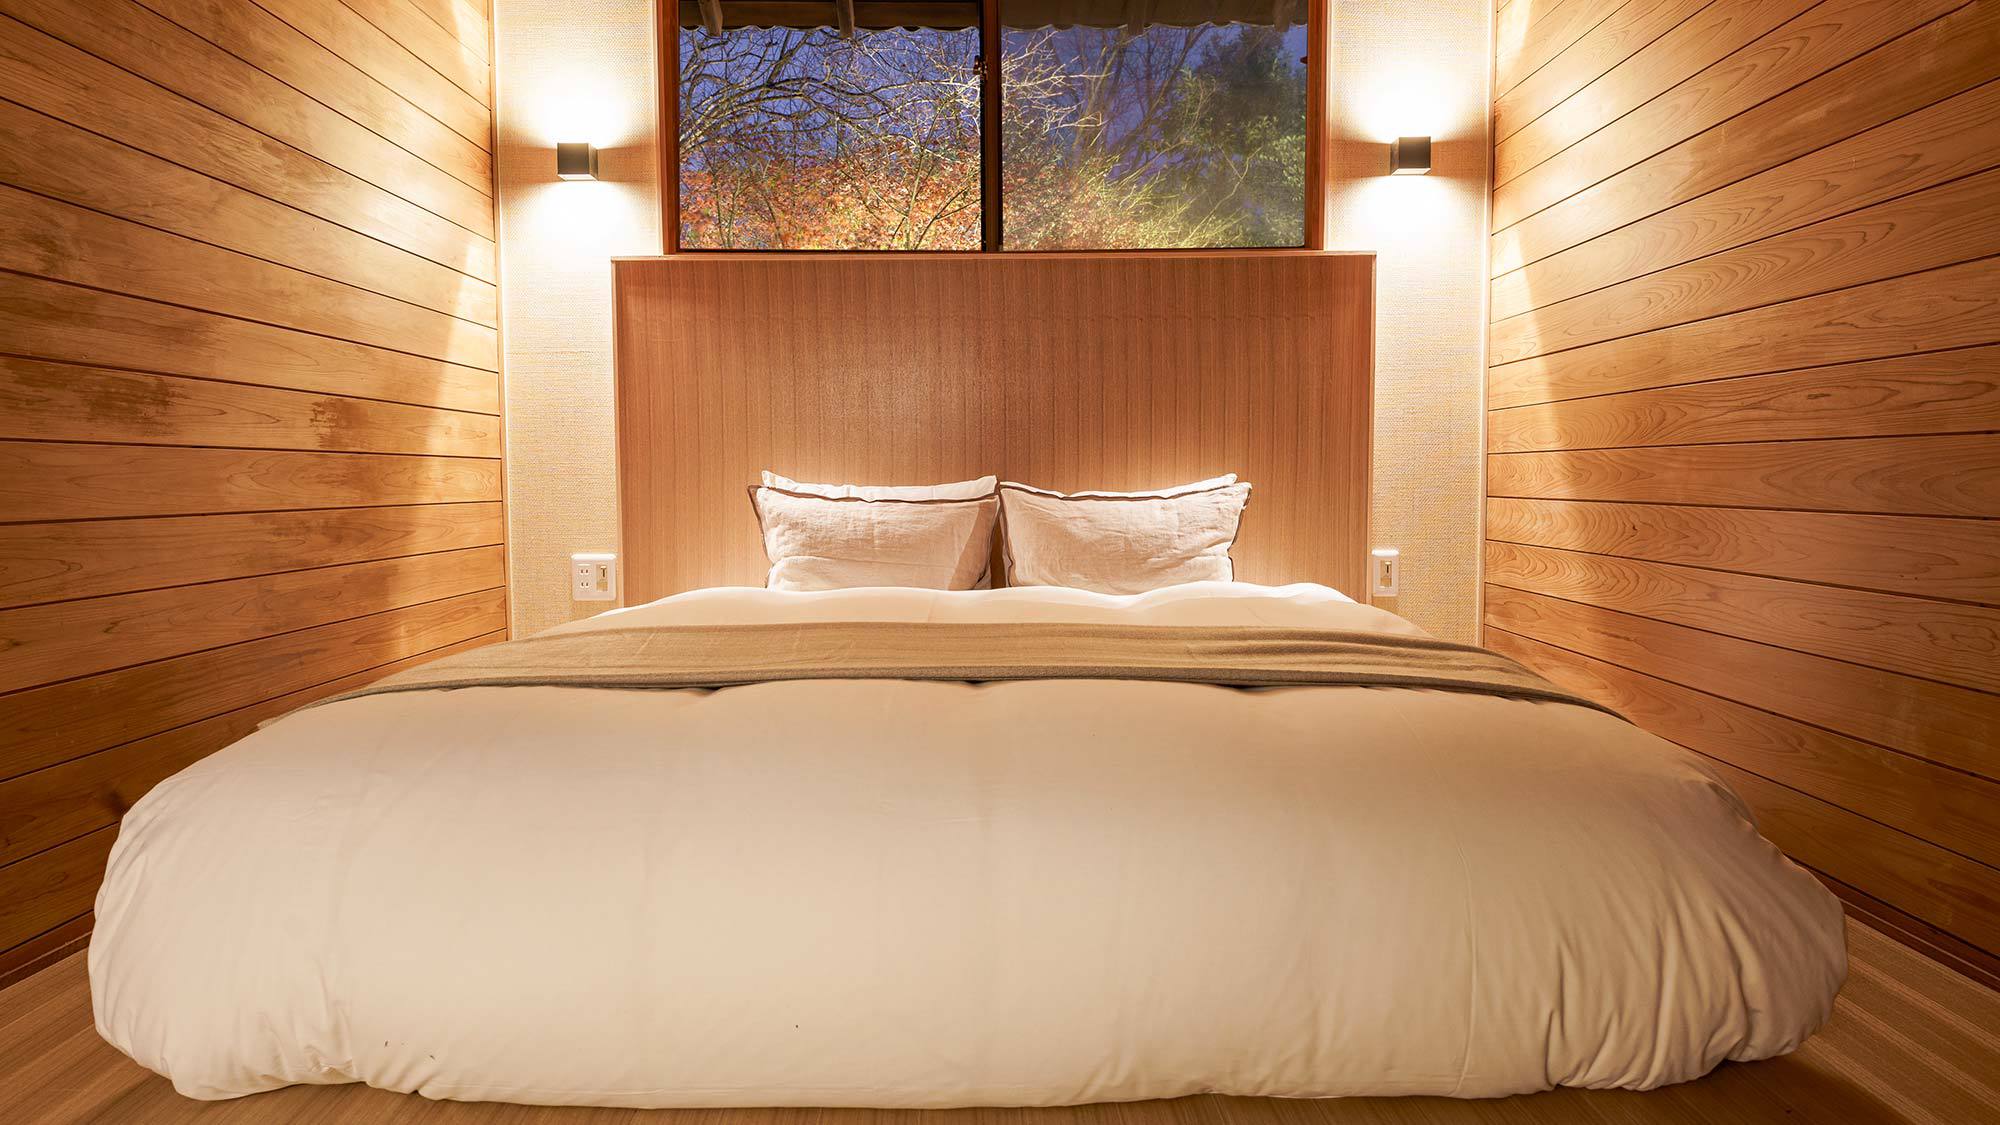 ・【寝室】木の温もりを感じられる壁が特徴、心地よい眠りにいざないます